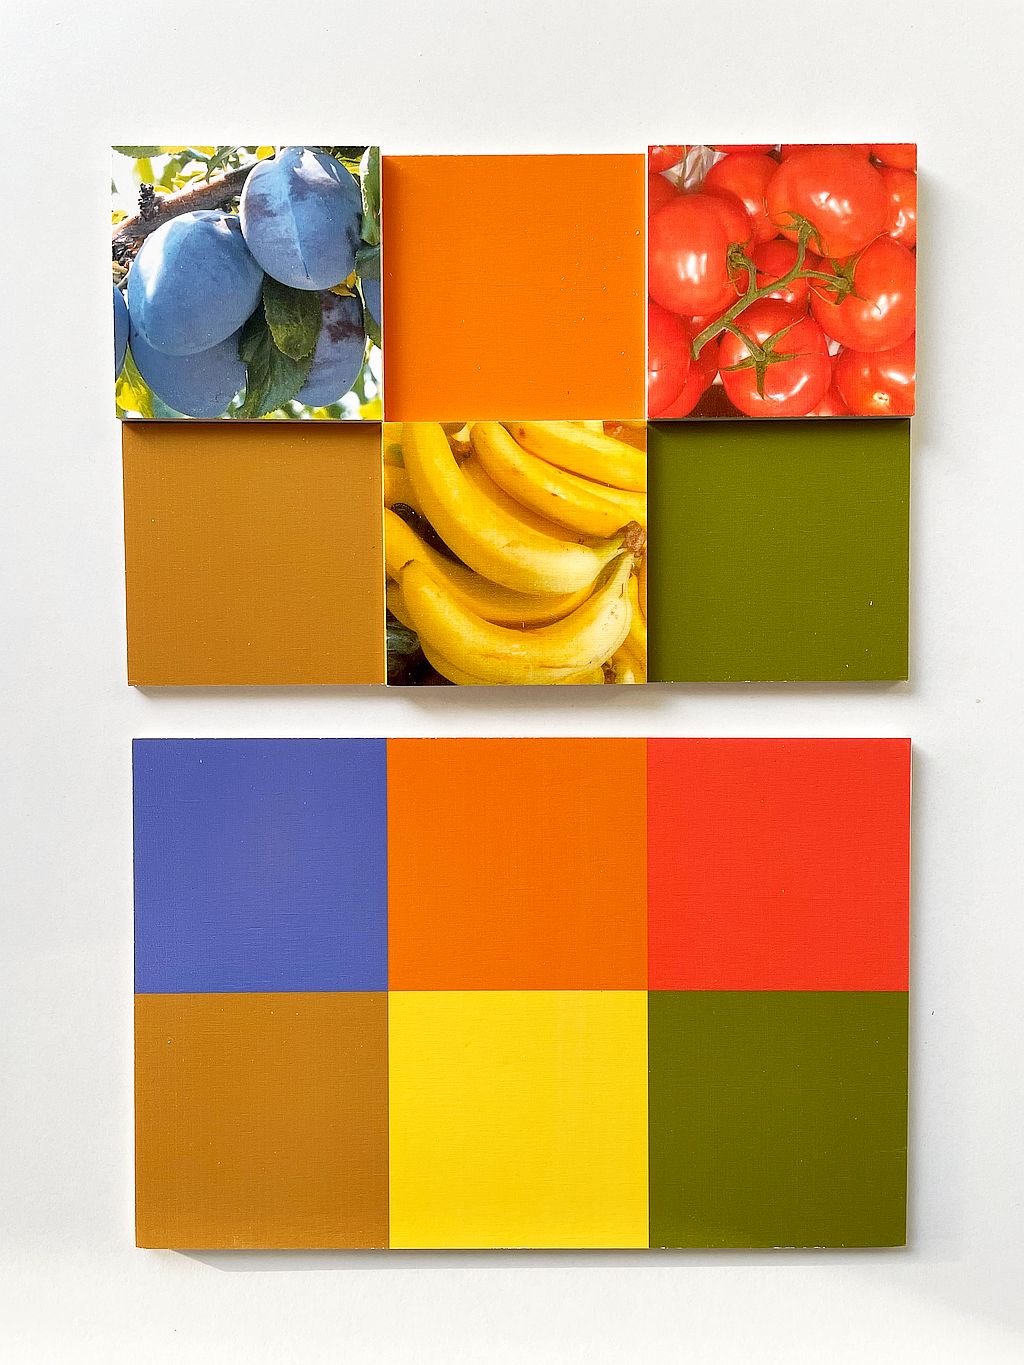 Jeu de loto - combinaison de couleurs, fruits et légumes